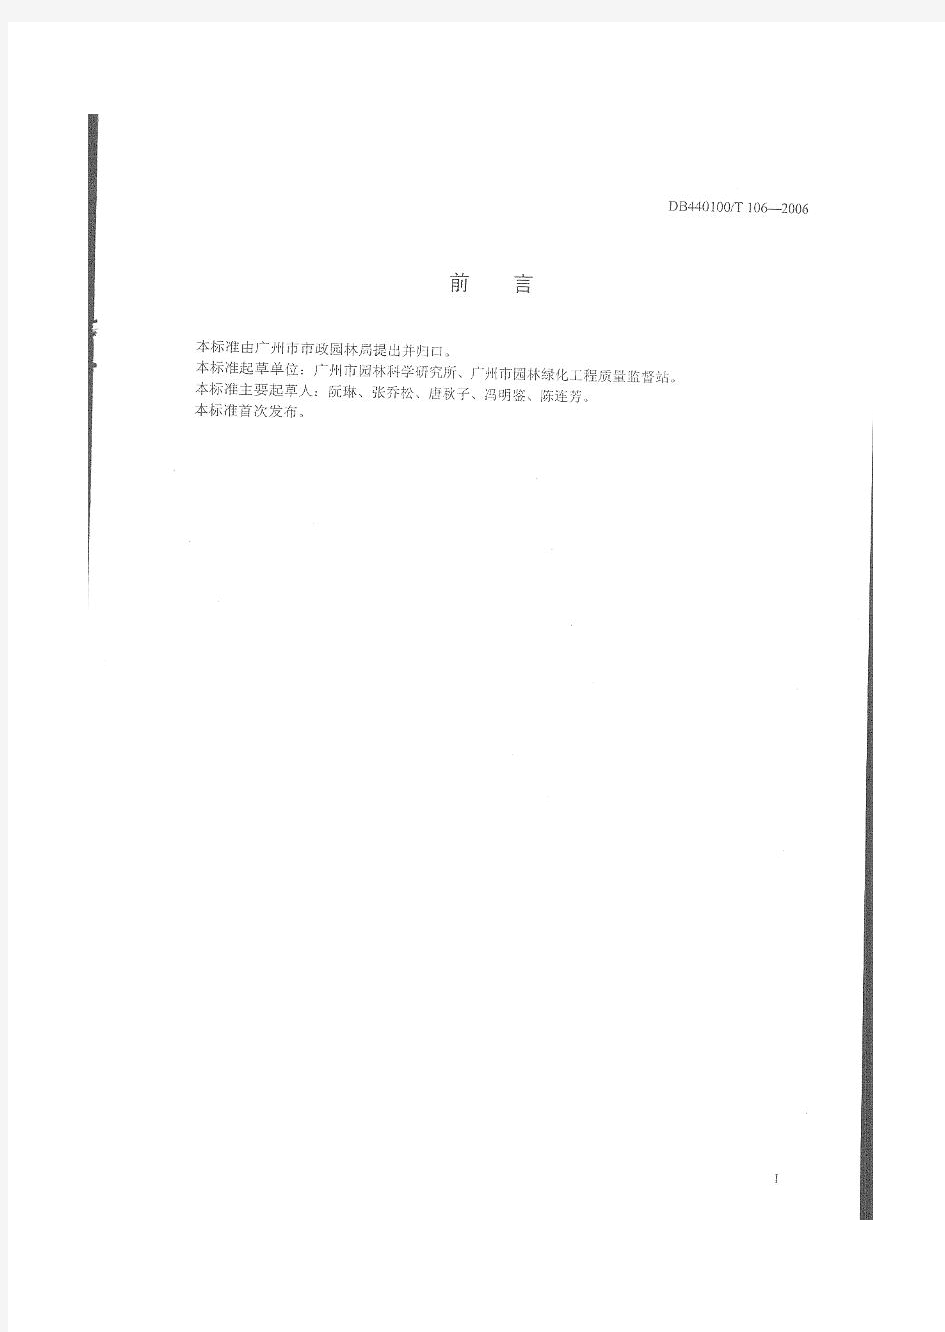 广州市地方性技术规范《园林种植土》DB440100T 106-2006